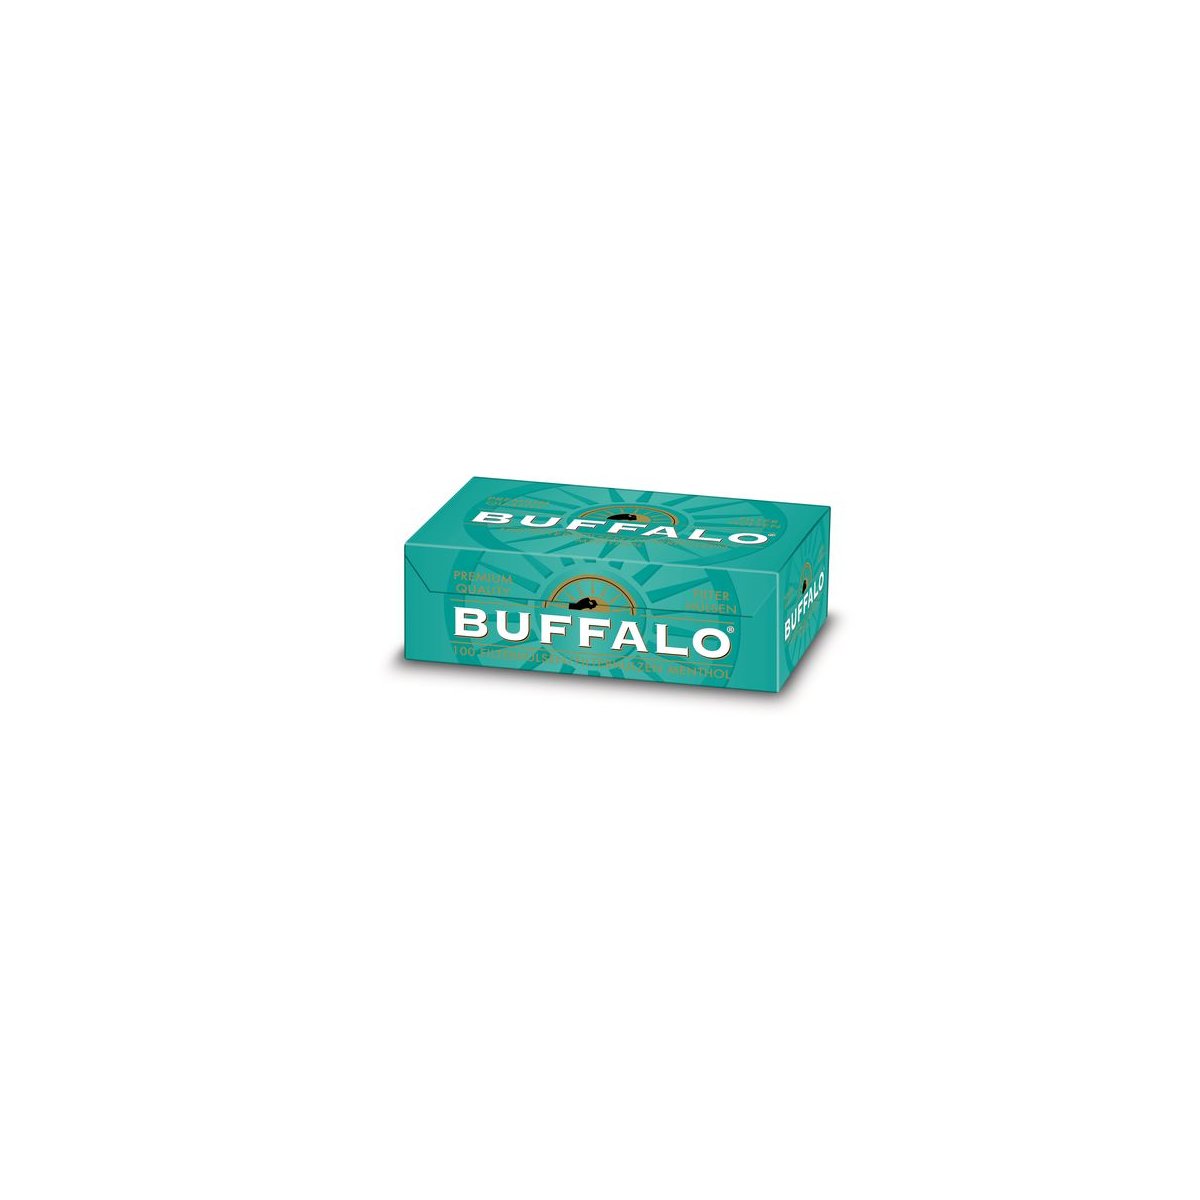 https://www.tabakvertrieb24.de/media/image/product/8102/lg/buffalo-menthol-huelsen-5er-pack.jpg